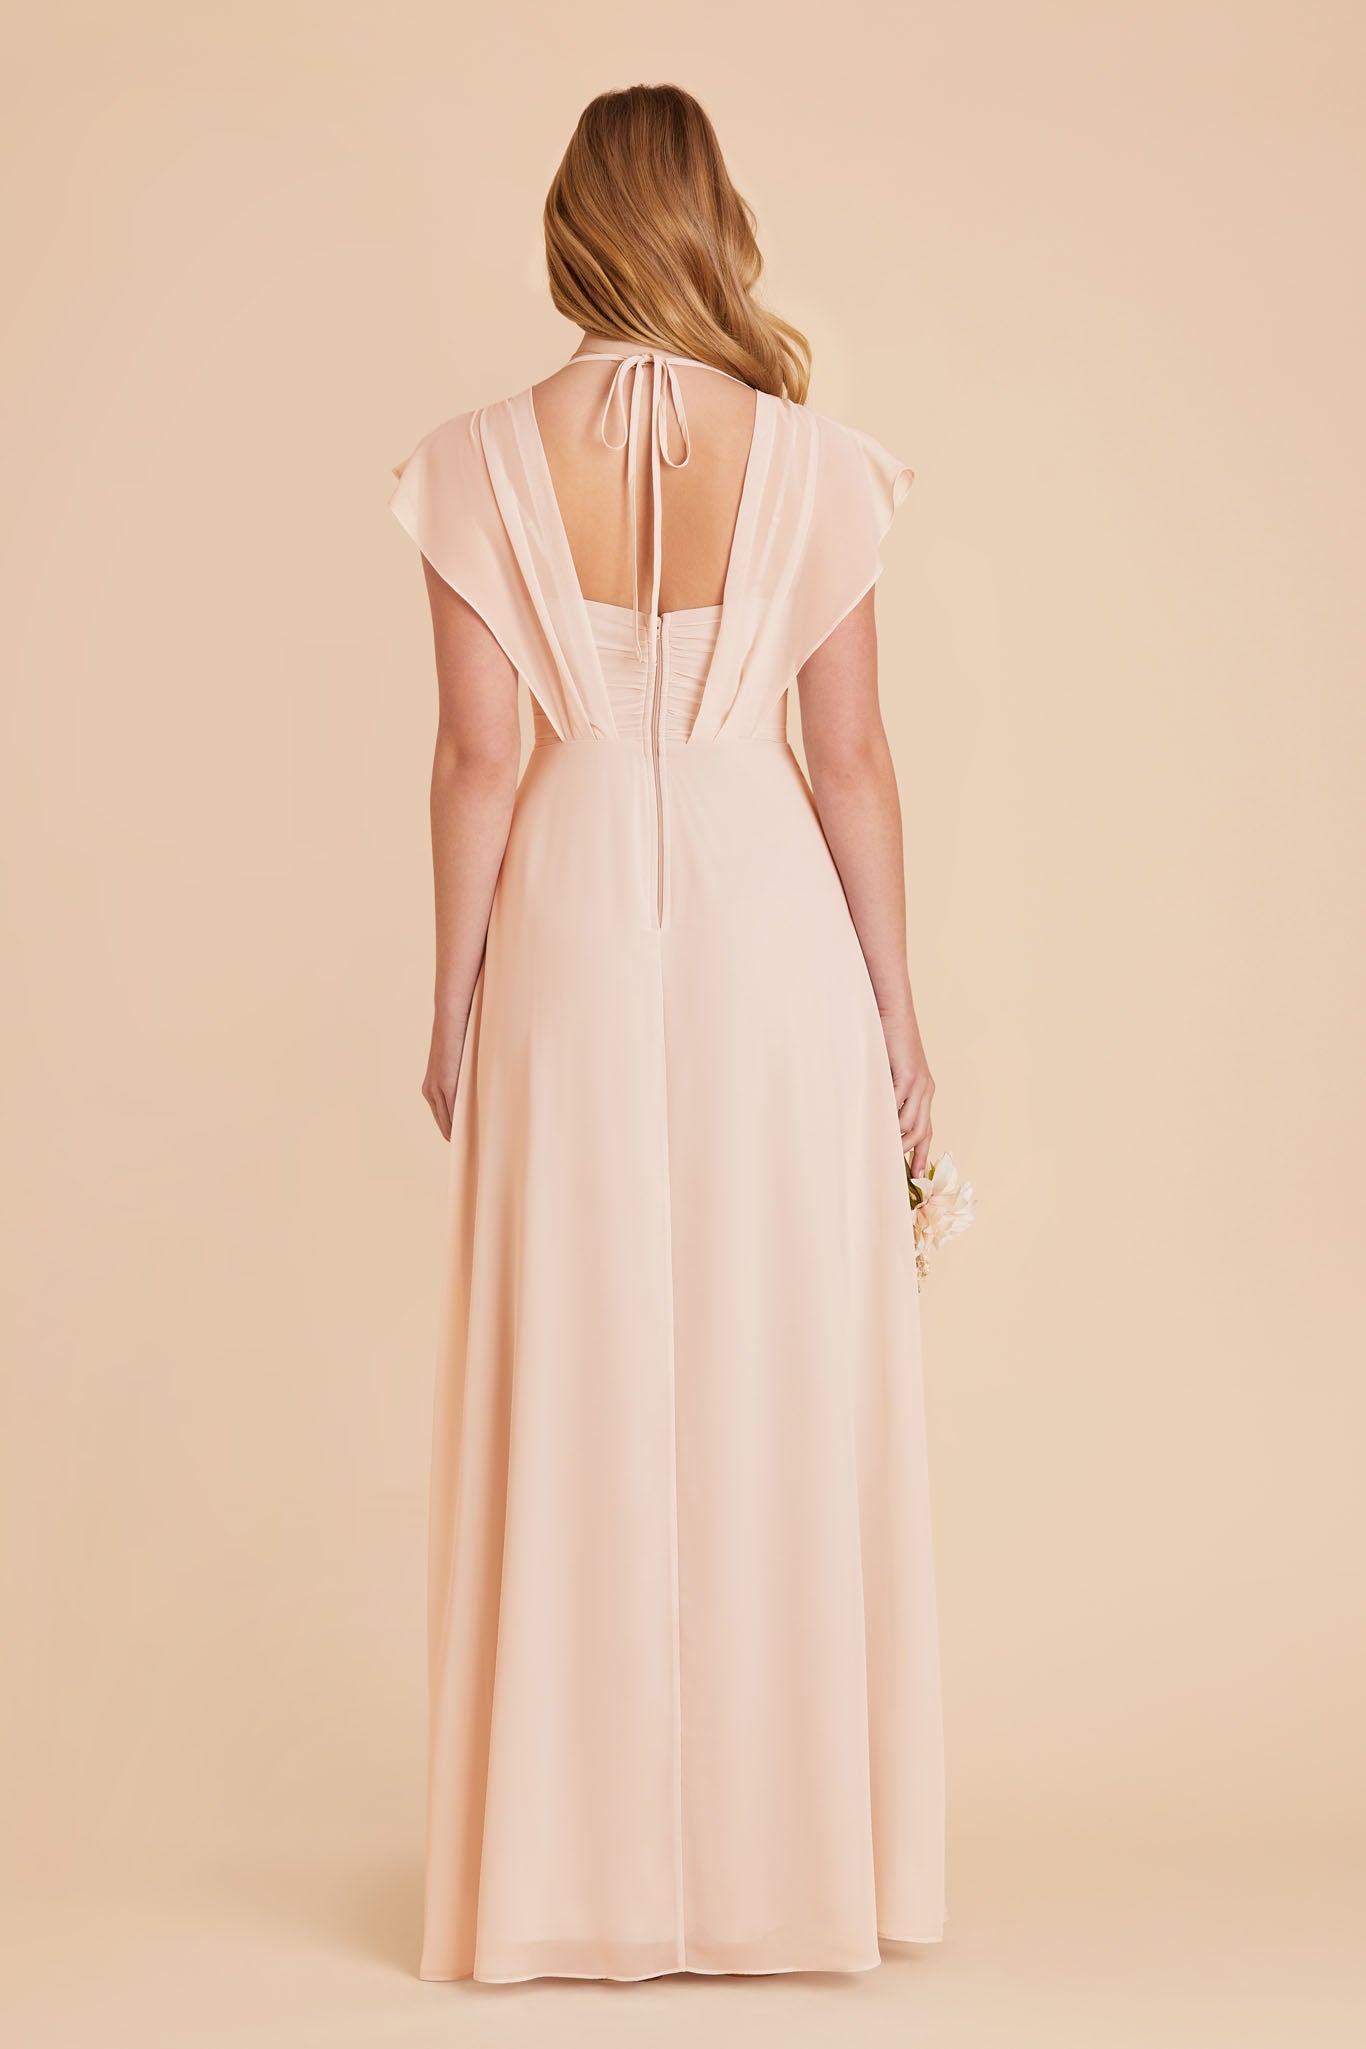 Violet Chiffon Dress - Pale Blush